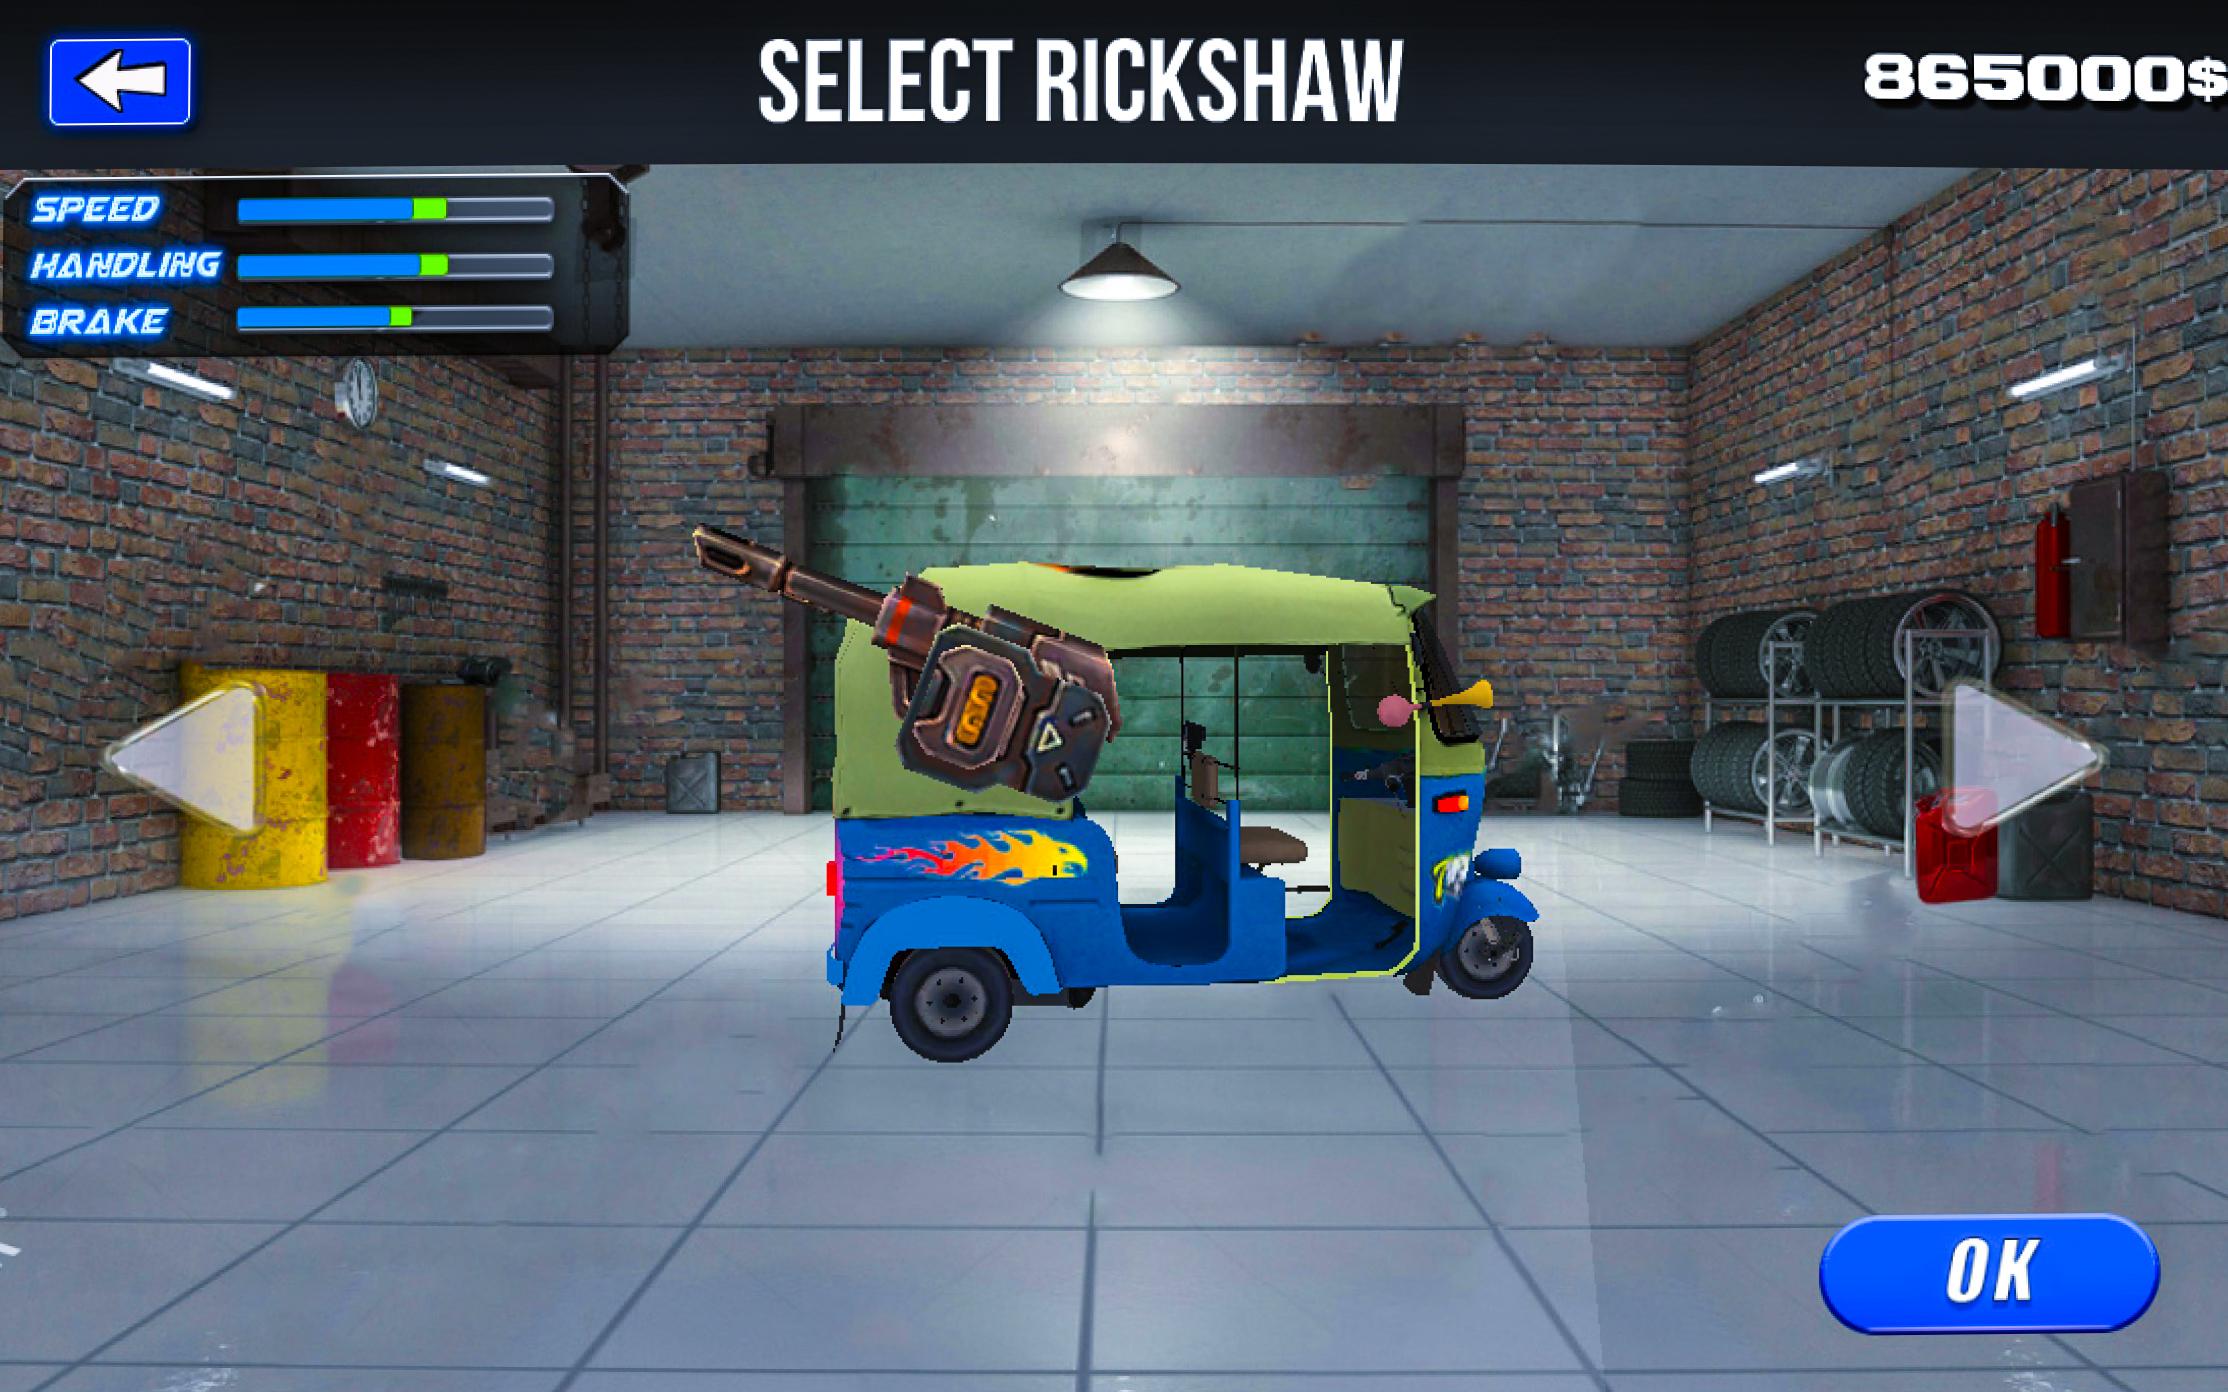 Tuk Tuk Rickshaw-auto rickshaw